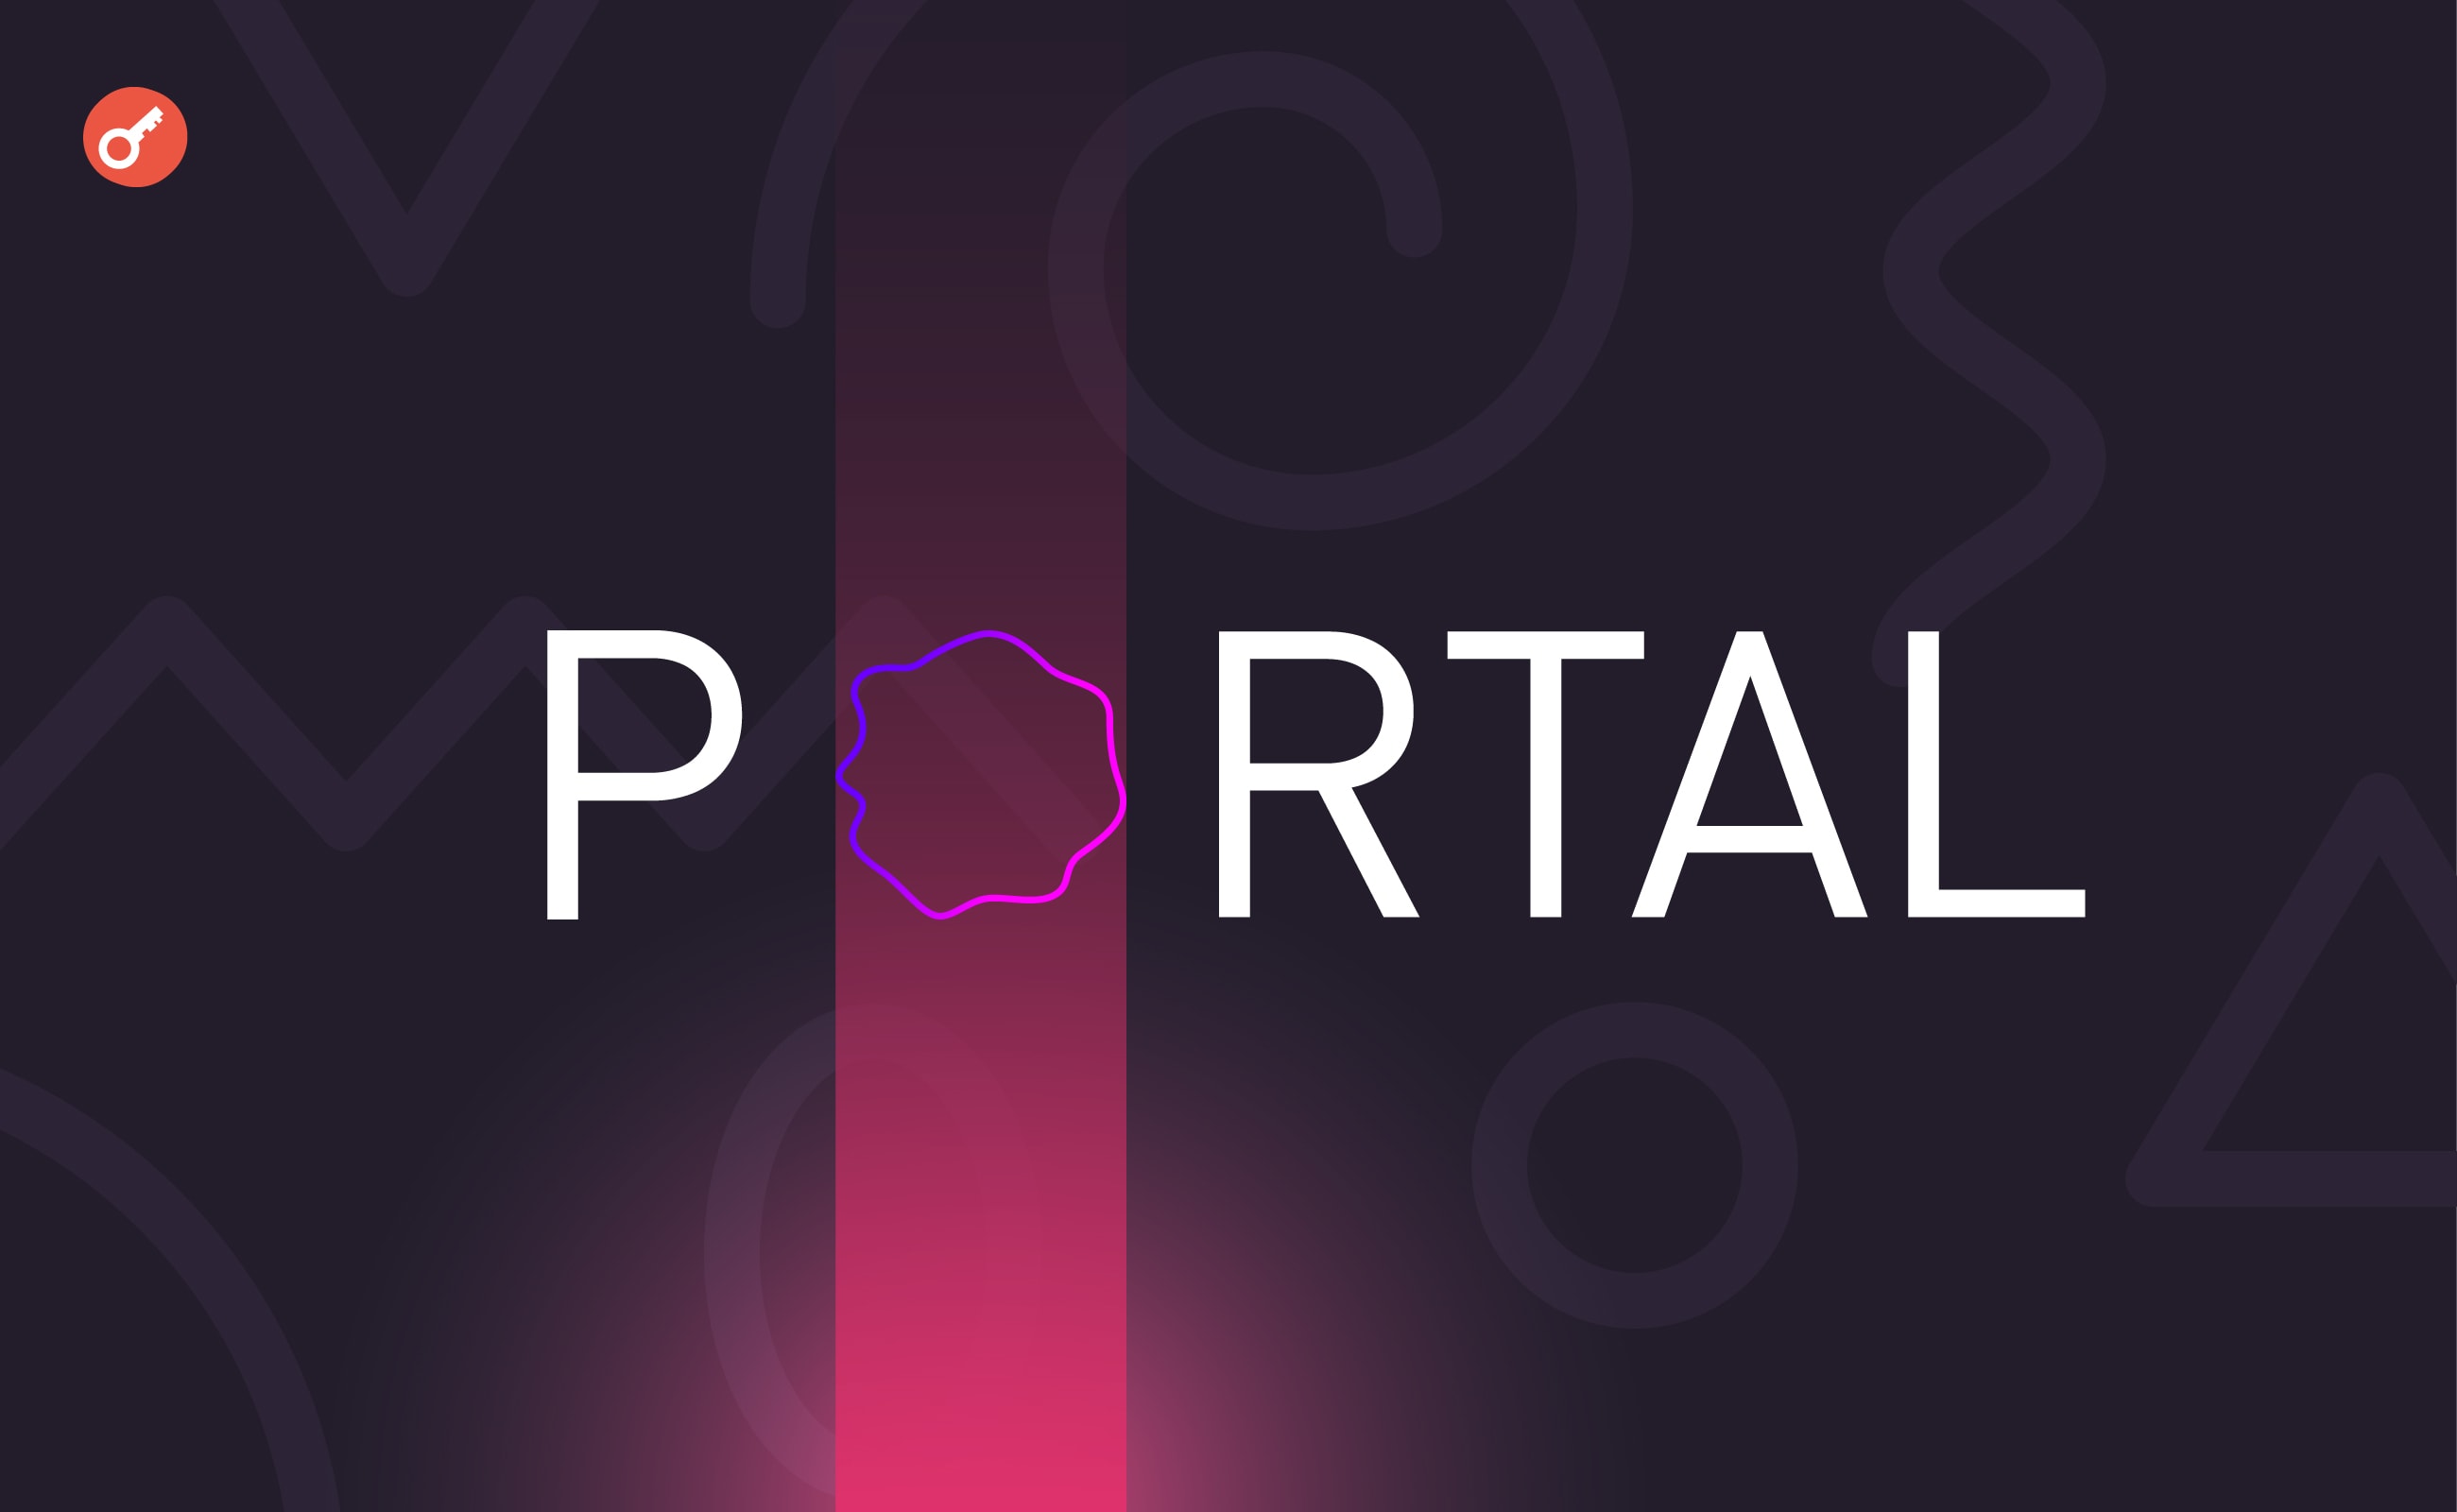 Стартап Portal залучив $34 млн інвестицій. Головний колаж новини.